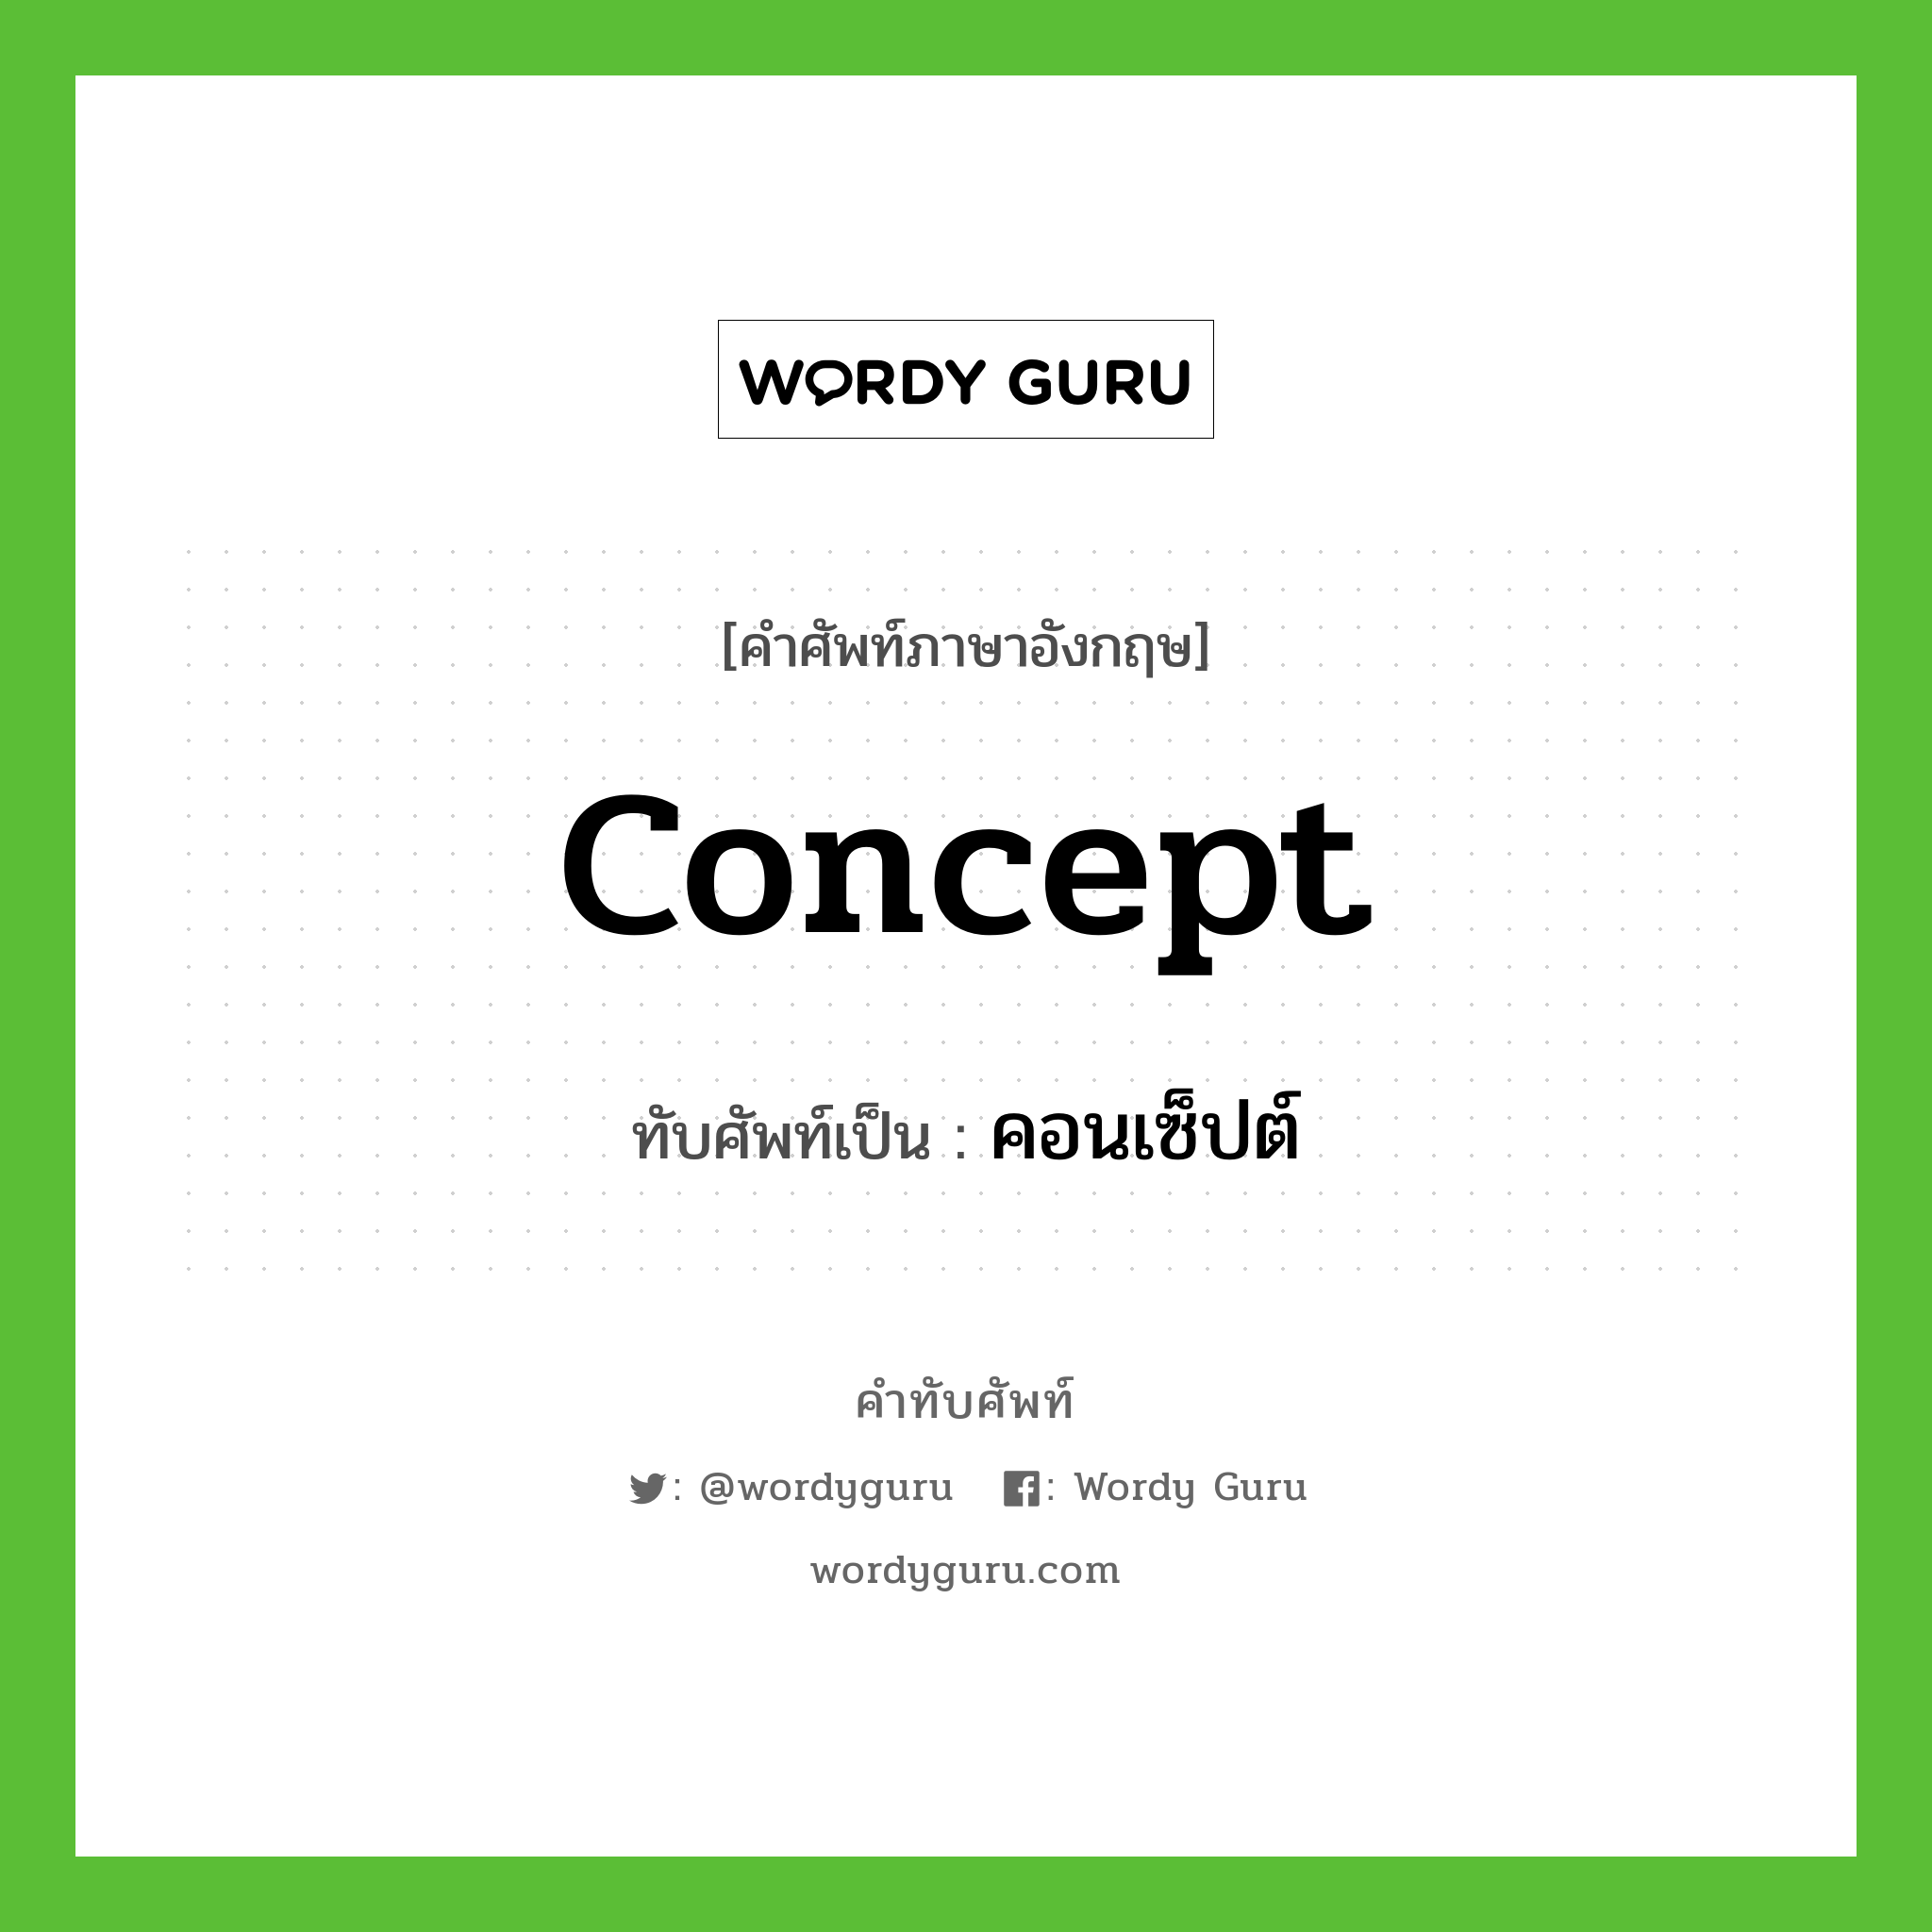 concept เขียนเป็นคำไทยว่าอะไร?, คำศัพท์ภาษาอังกฤษ concept ทับศัพท์เป็น คอนเซ็ปต์